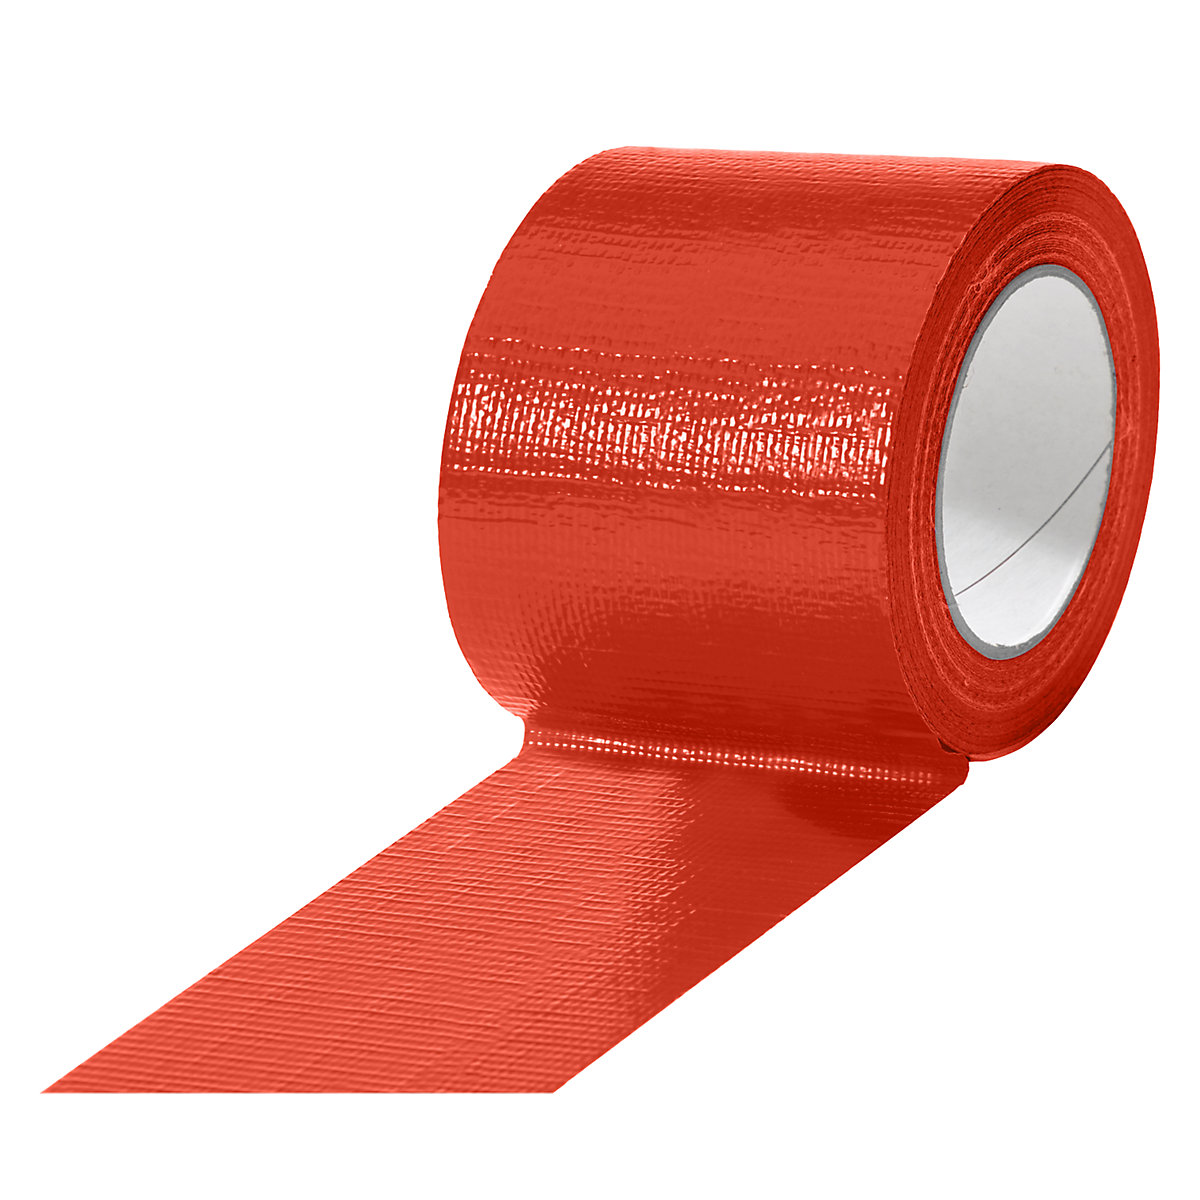 Taśma tkaninowa, w różnych kolorach, opak. 12 rolek, czerwona, szer. taśmy 75 mm-13